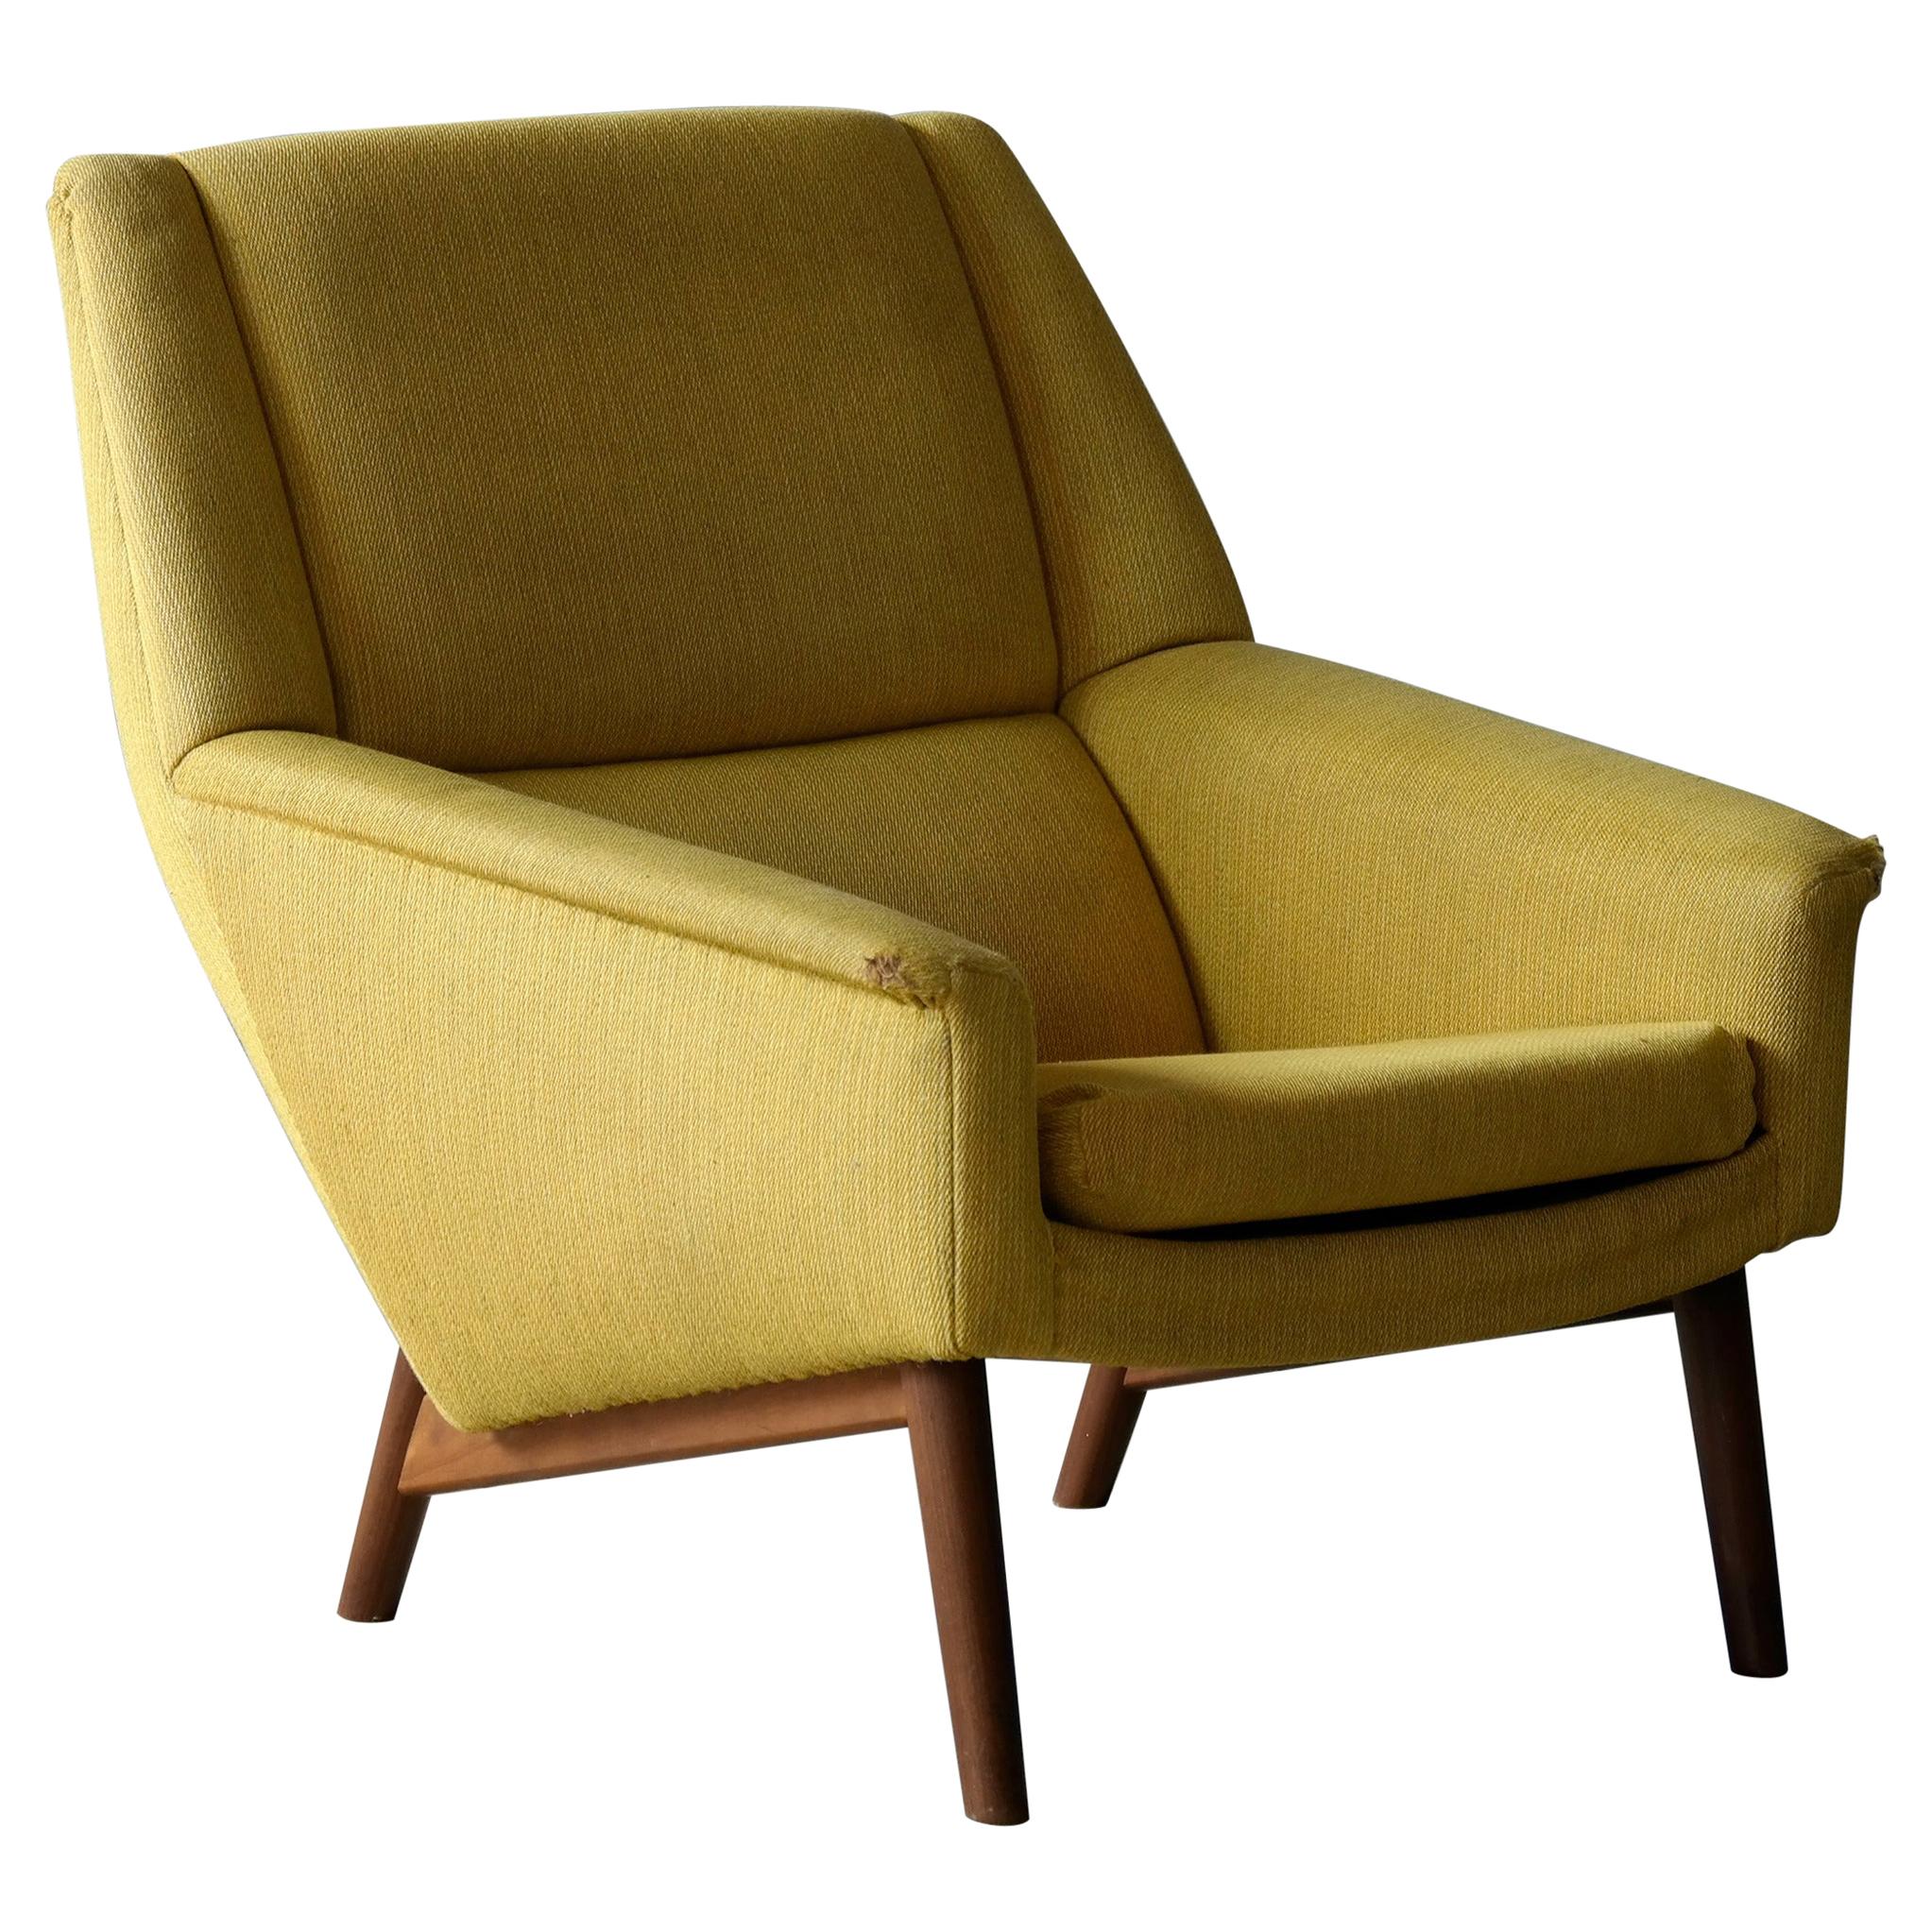 Folke Ohlsson 1950s Teak Lounge Chair for Fritz Hansen Danish Midcentury